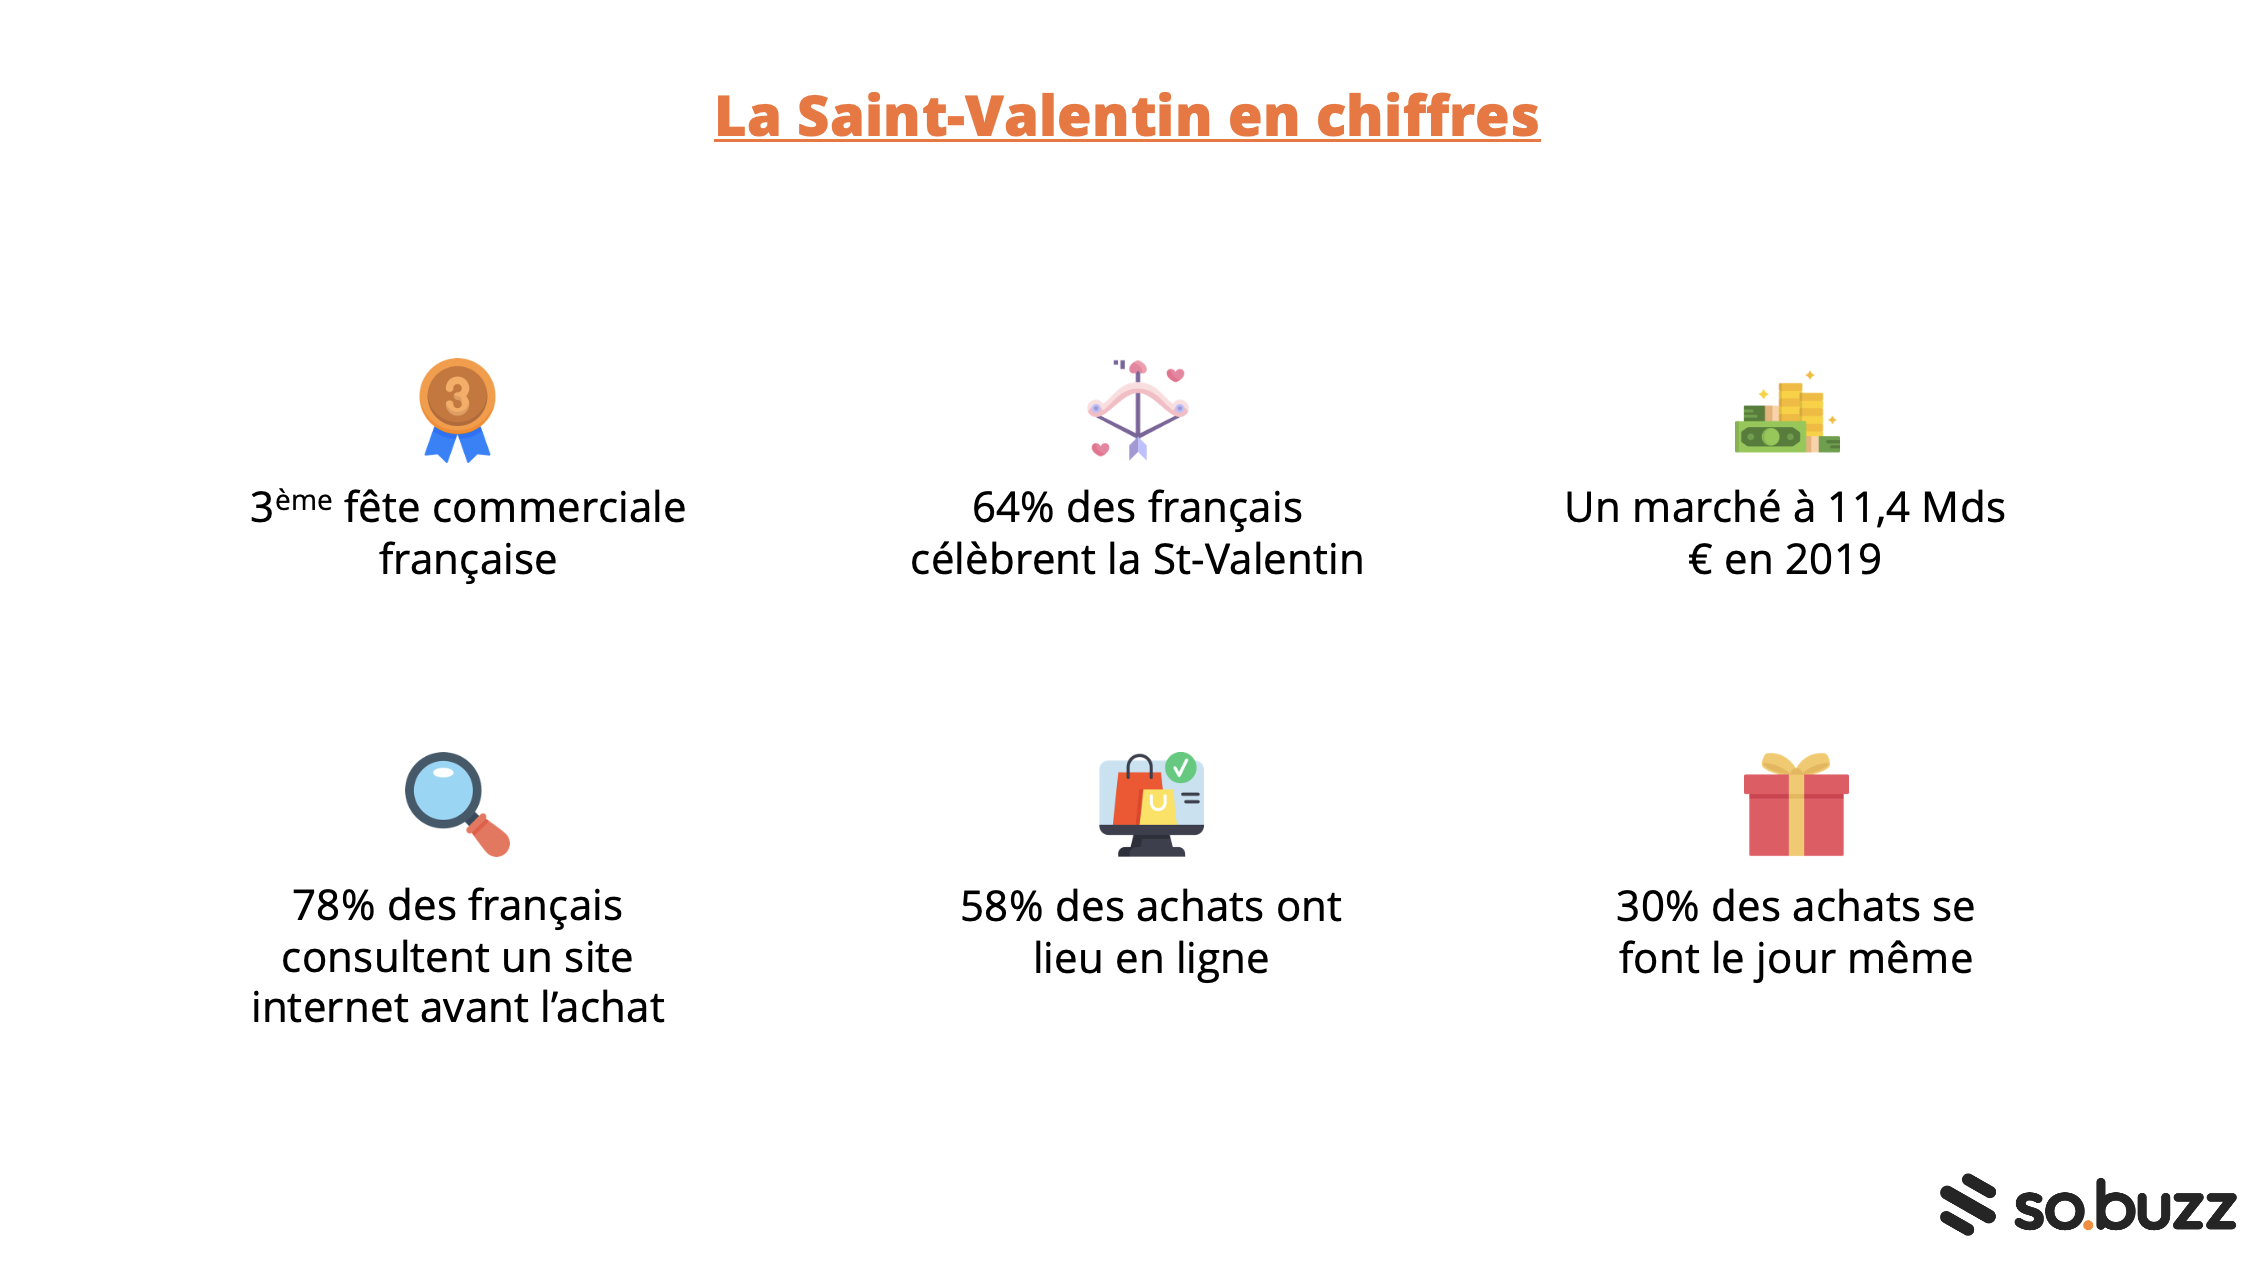 Les chiffres clés de la Saint-Valentin en France